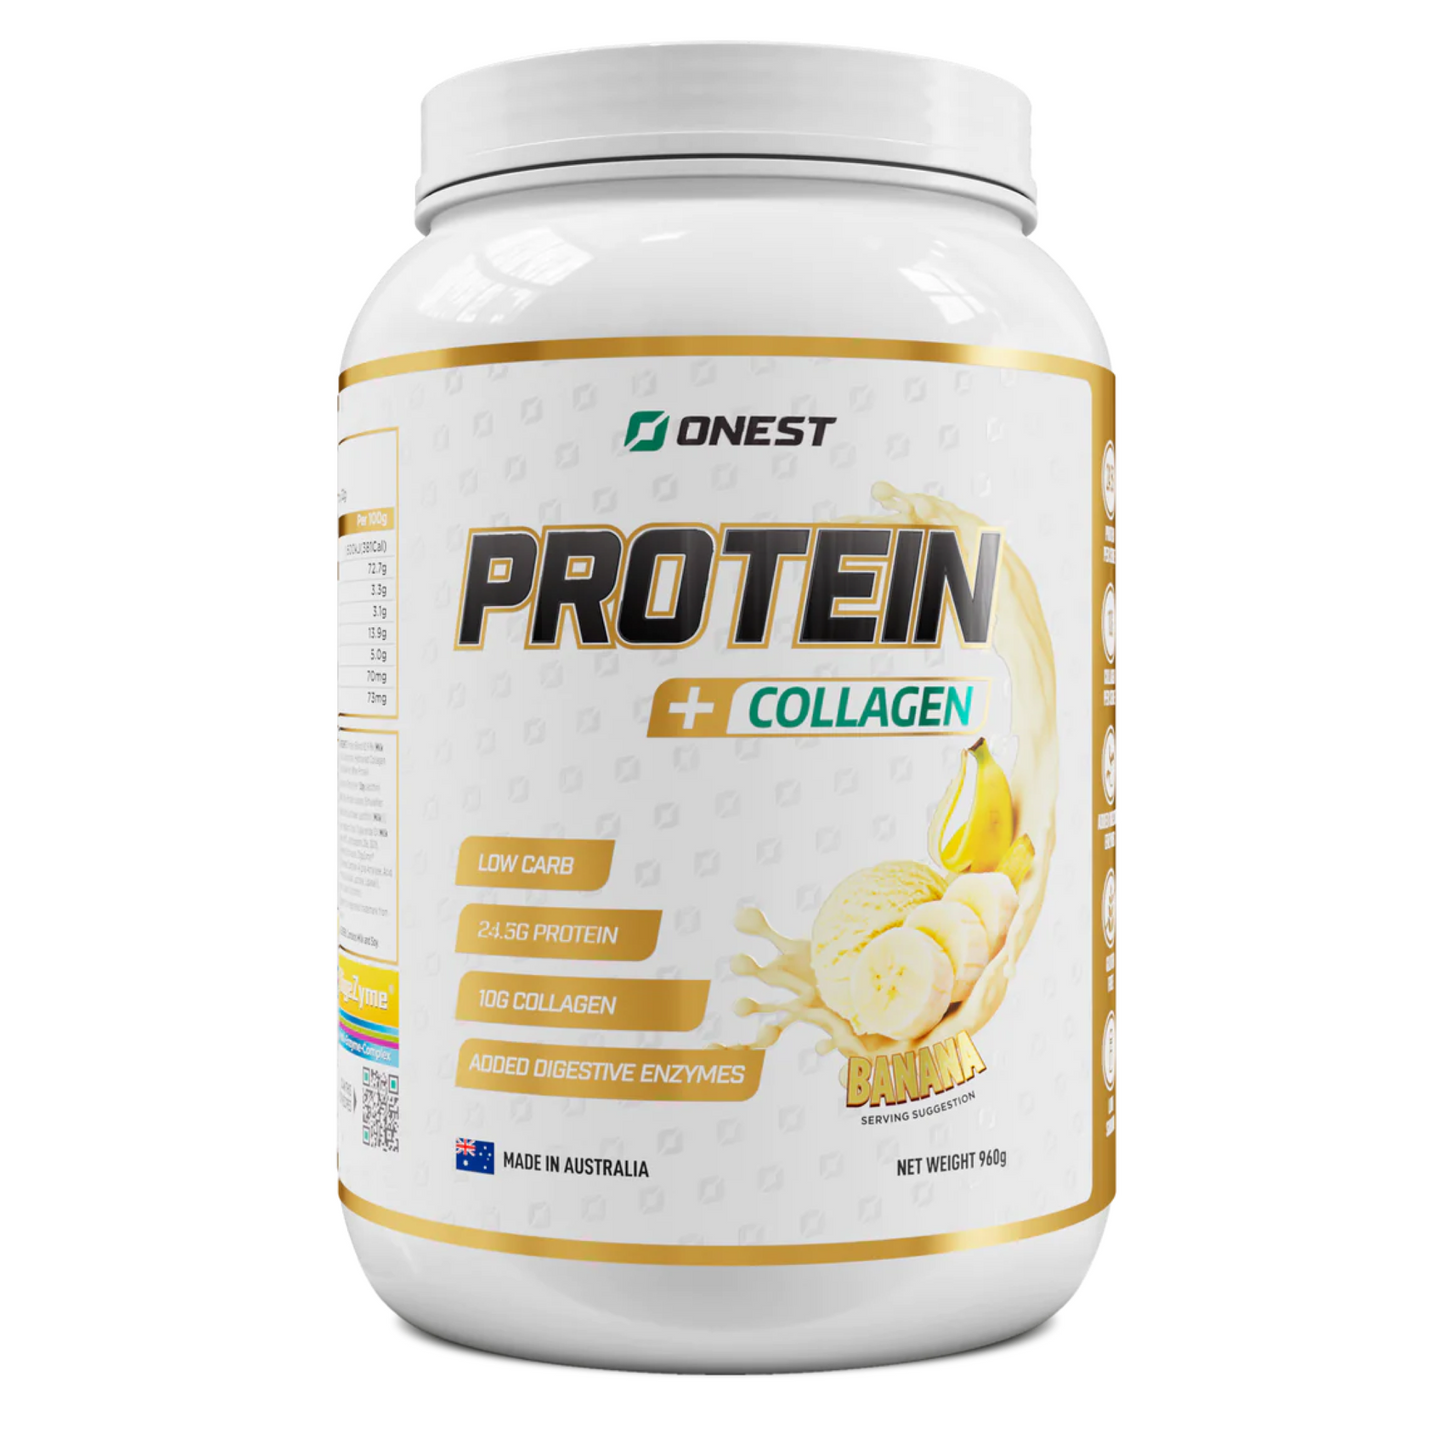 Onest Protein + Collagen Banana